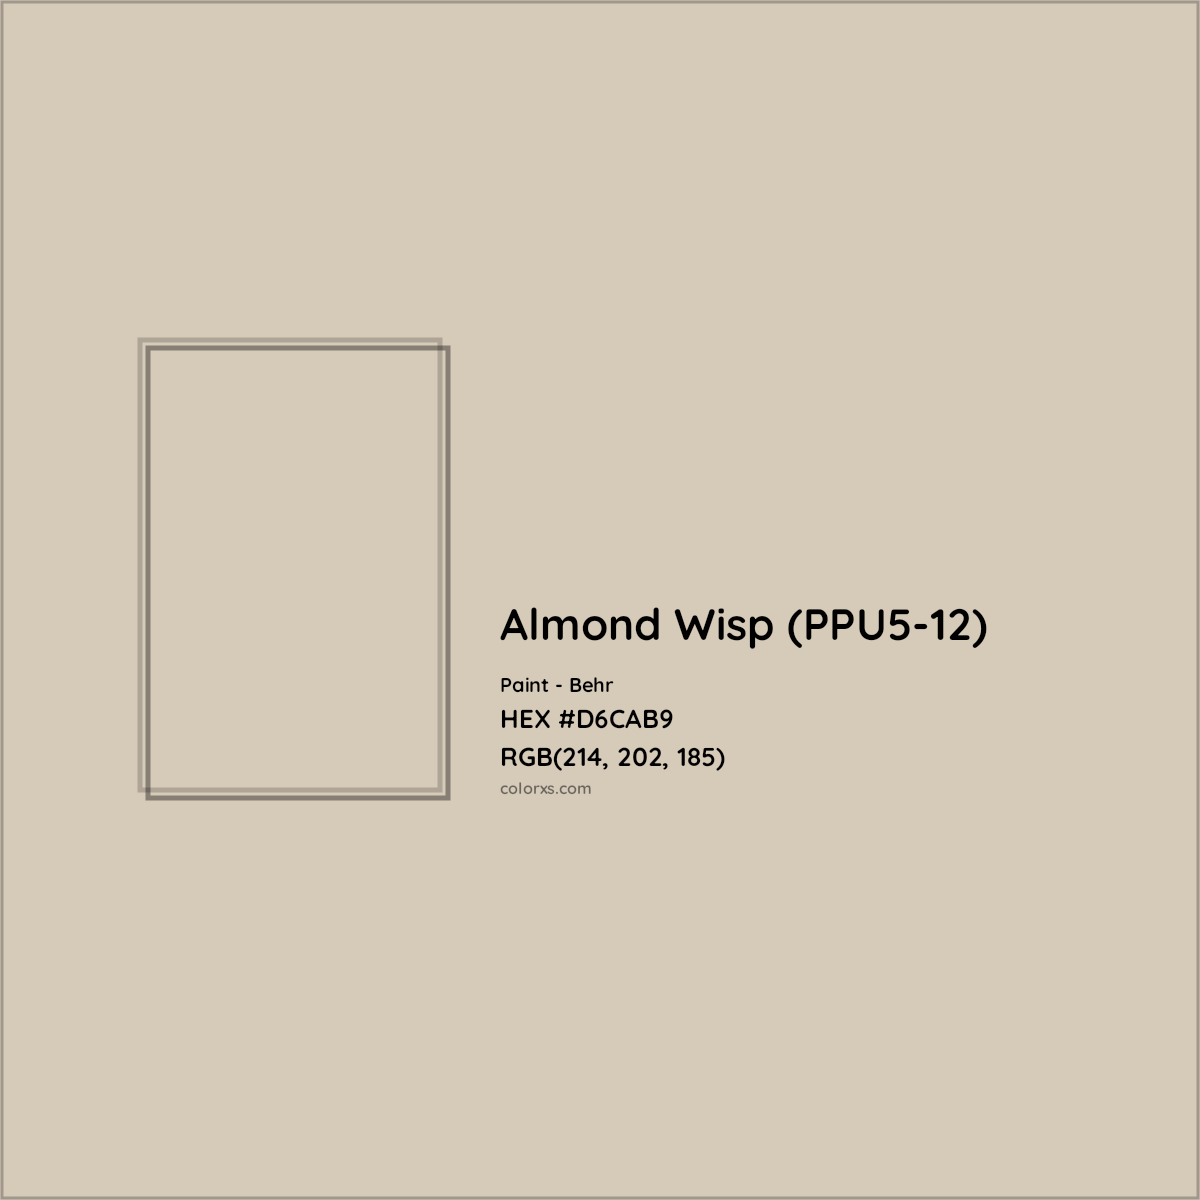 HEX #D6CAB9 Almond Wisp (PPU5-12) Paint Behr - Color Code